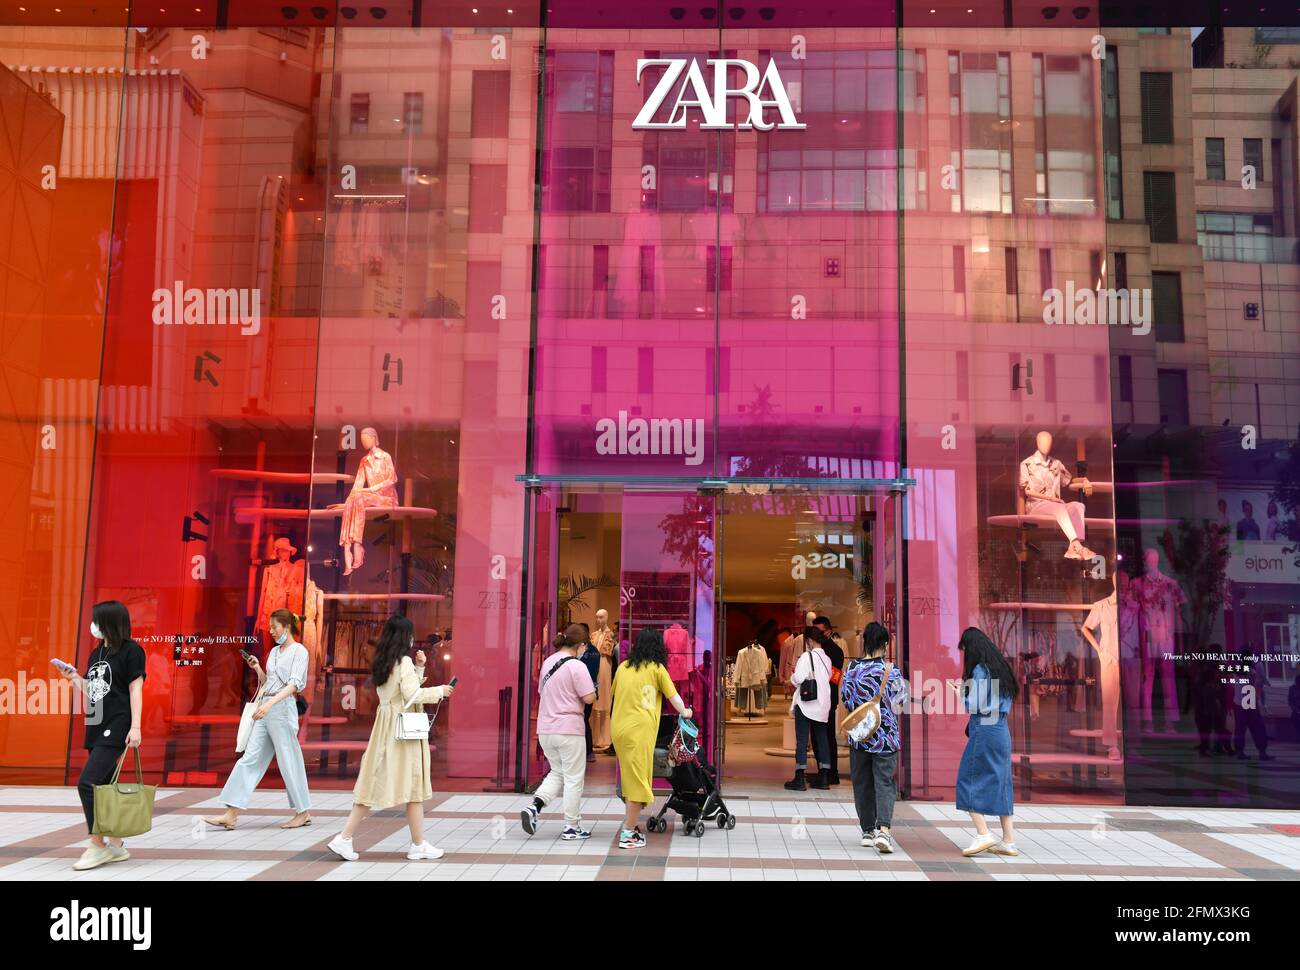 Les gens marchent dans la boutique Zara sur la rue Wangfujing à Beijing.  Récemment, la société affiliée de Zara en Chine a été punie par le bureau  de supervision du marché et